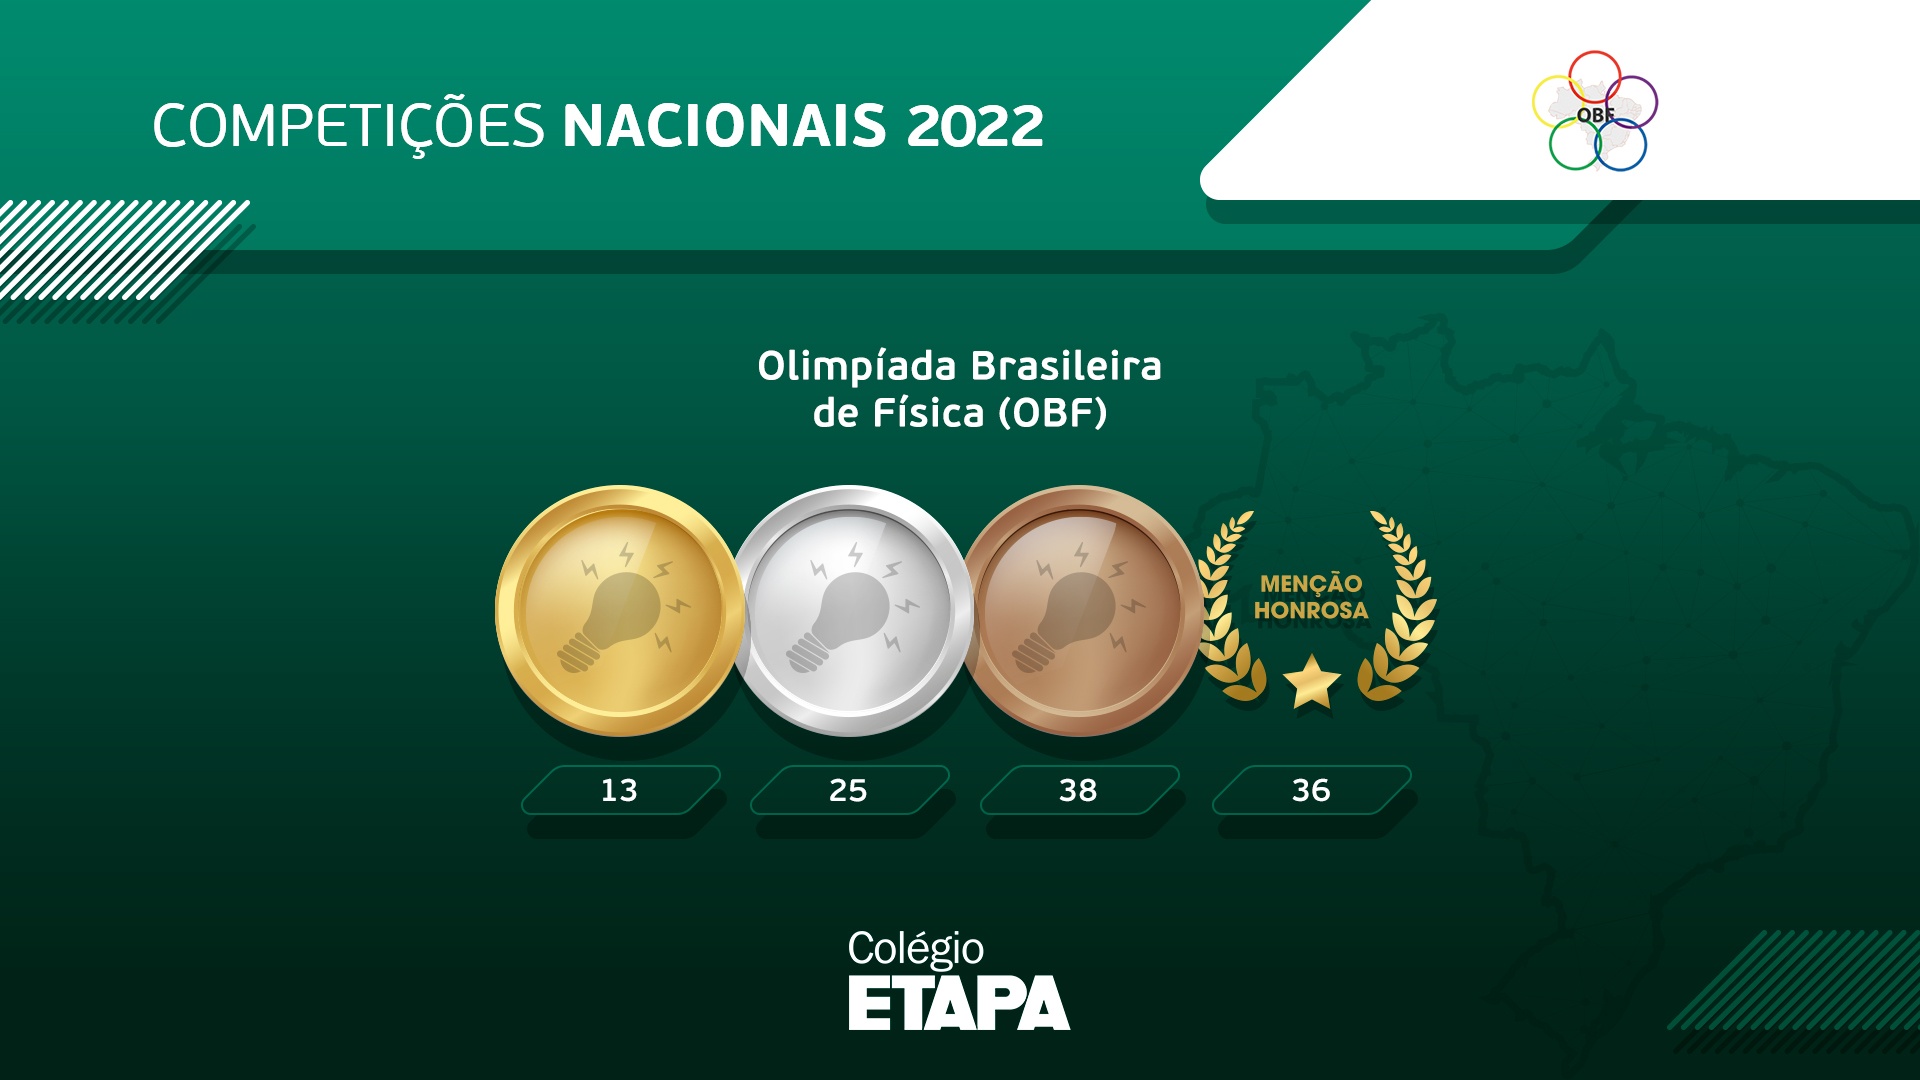 Com 112 premiações na OBF 2022, o Colégio Etapa foi a única escola do país a ultrapassar a marca das 100 medalhas na competição.